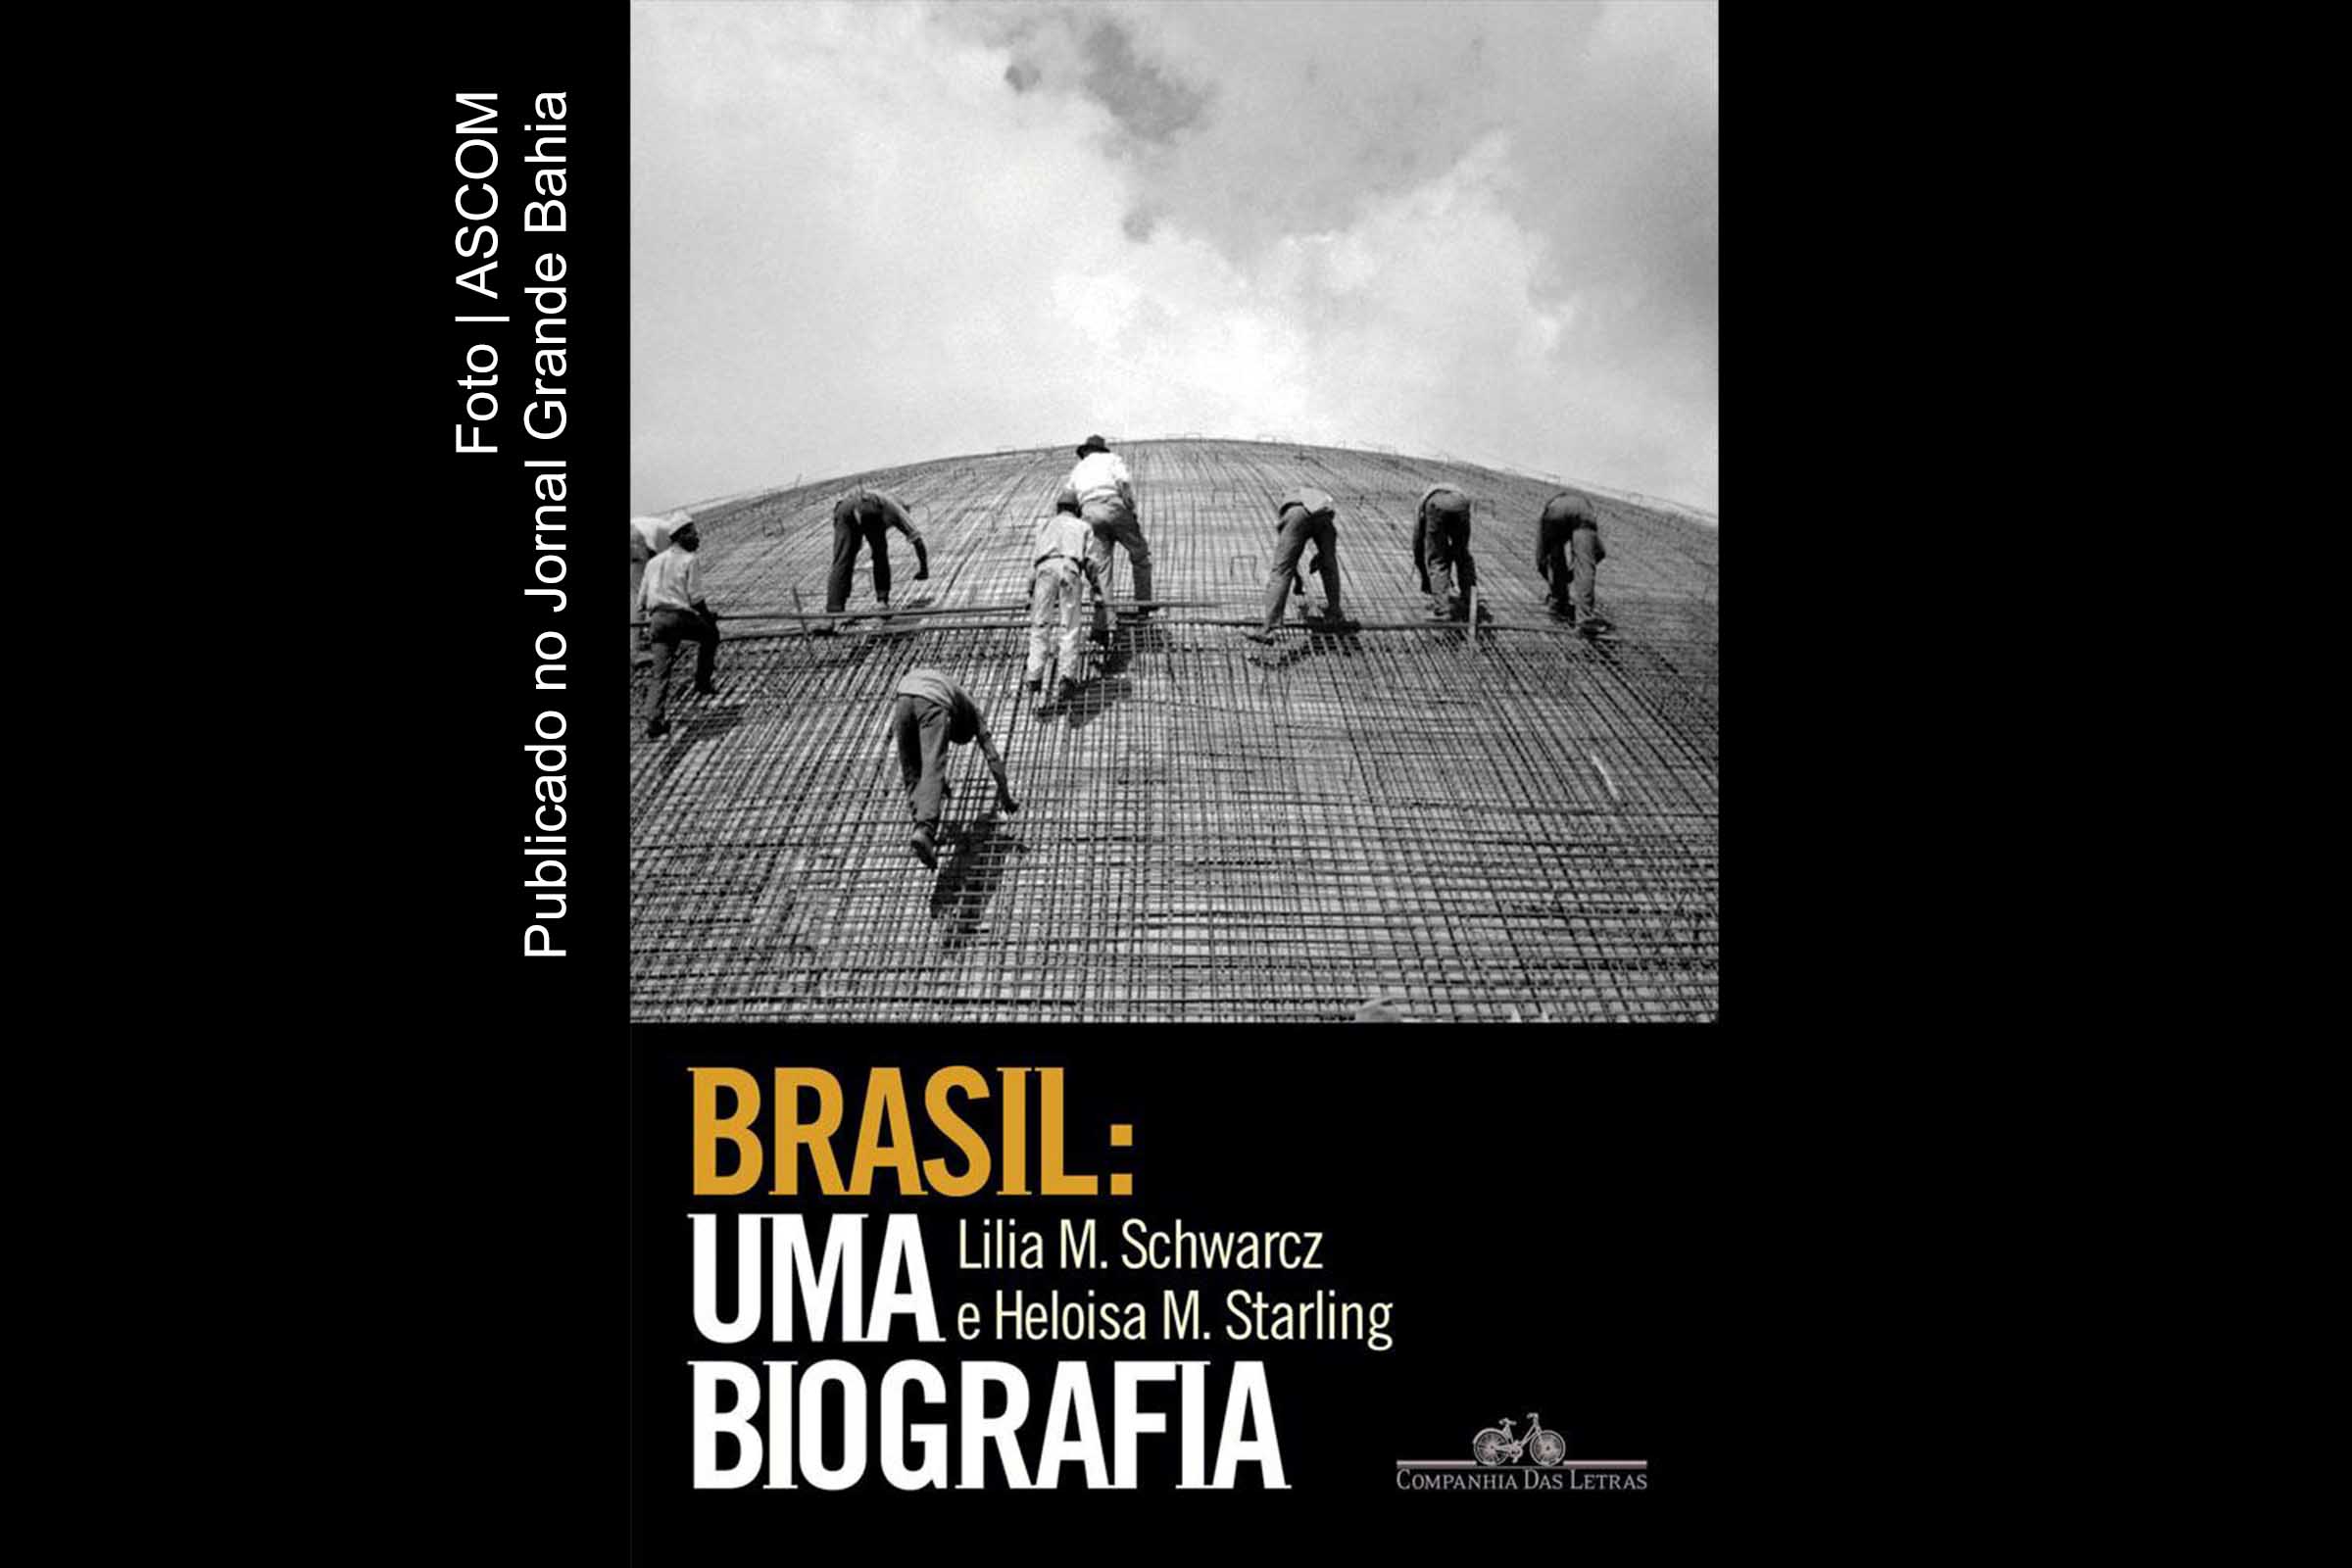 Capa do livro 'Brasil: Uma biografia'.